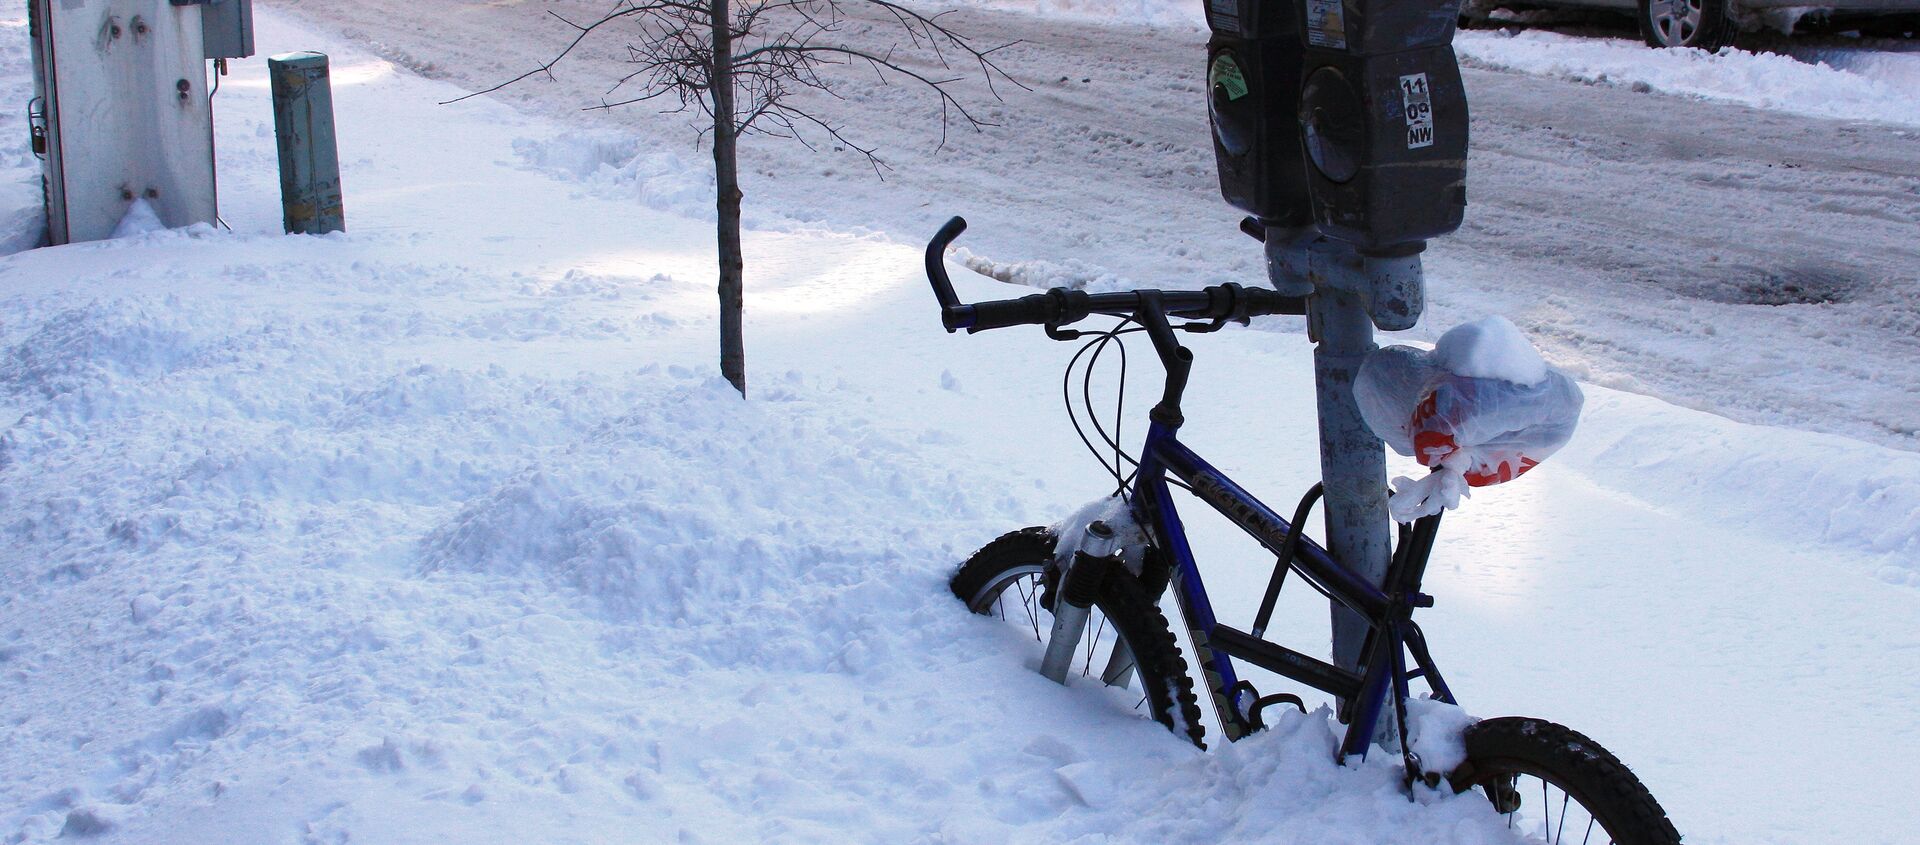 Занесенный снегом велосипед - Sputnik Латвия, 1920, 02.02.2021